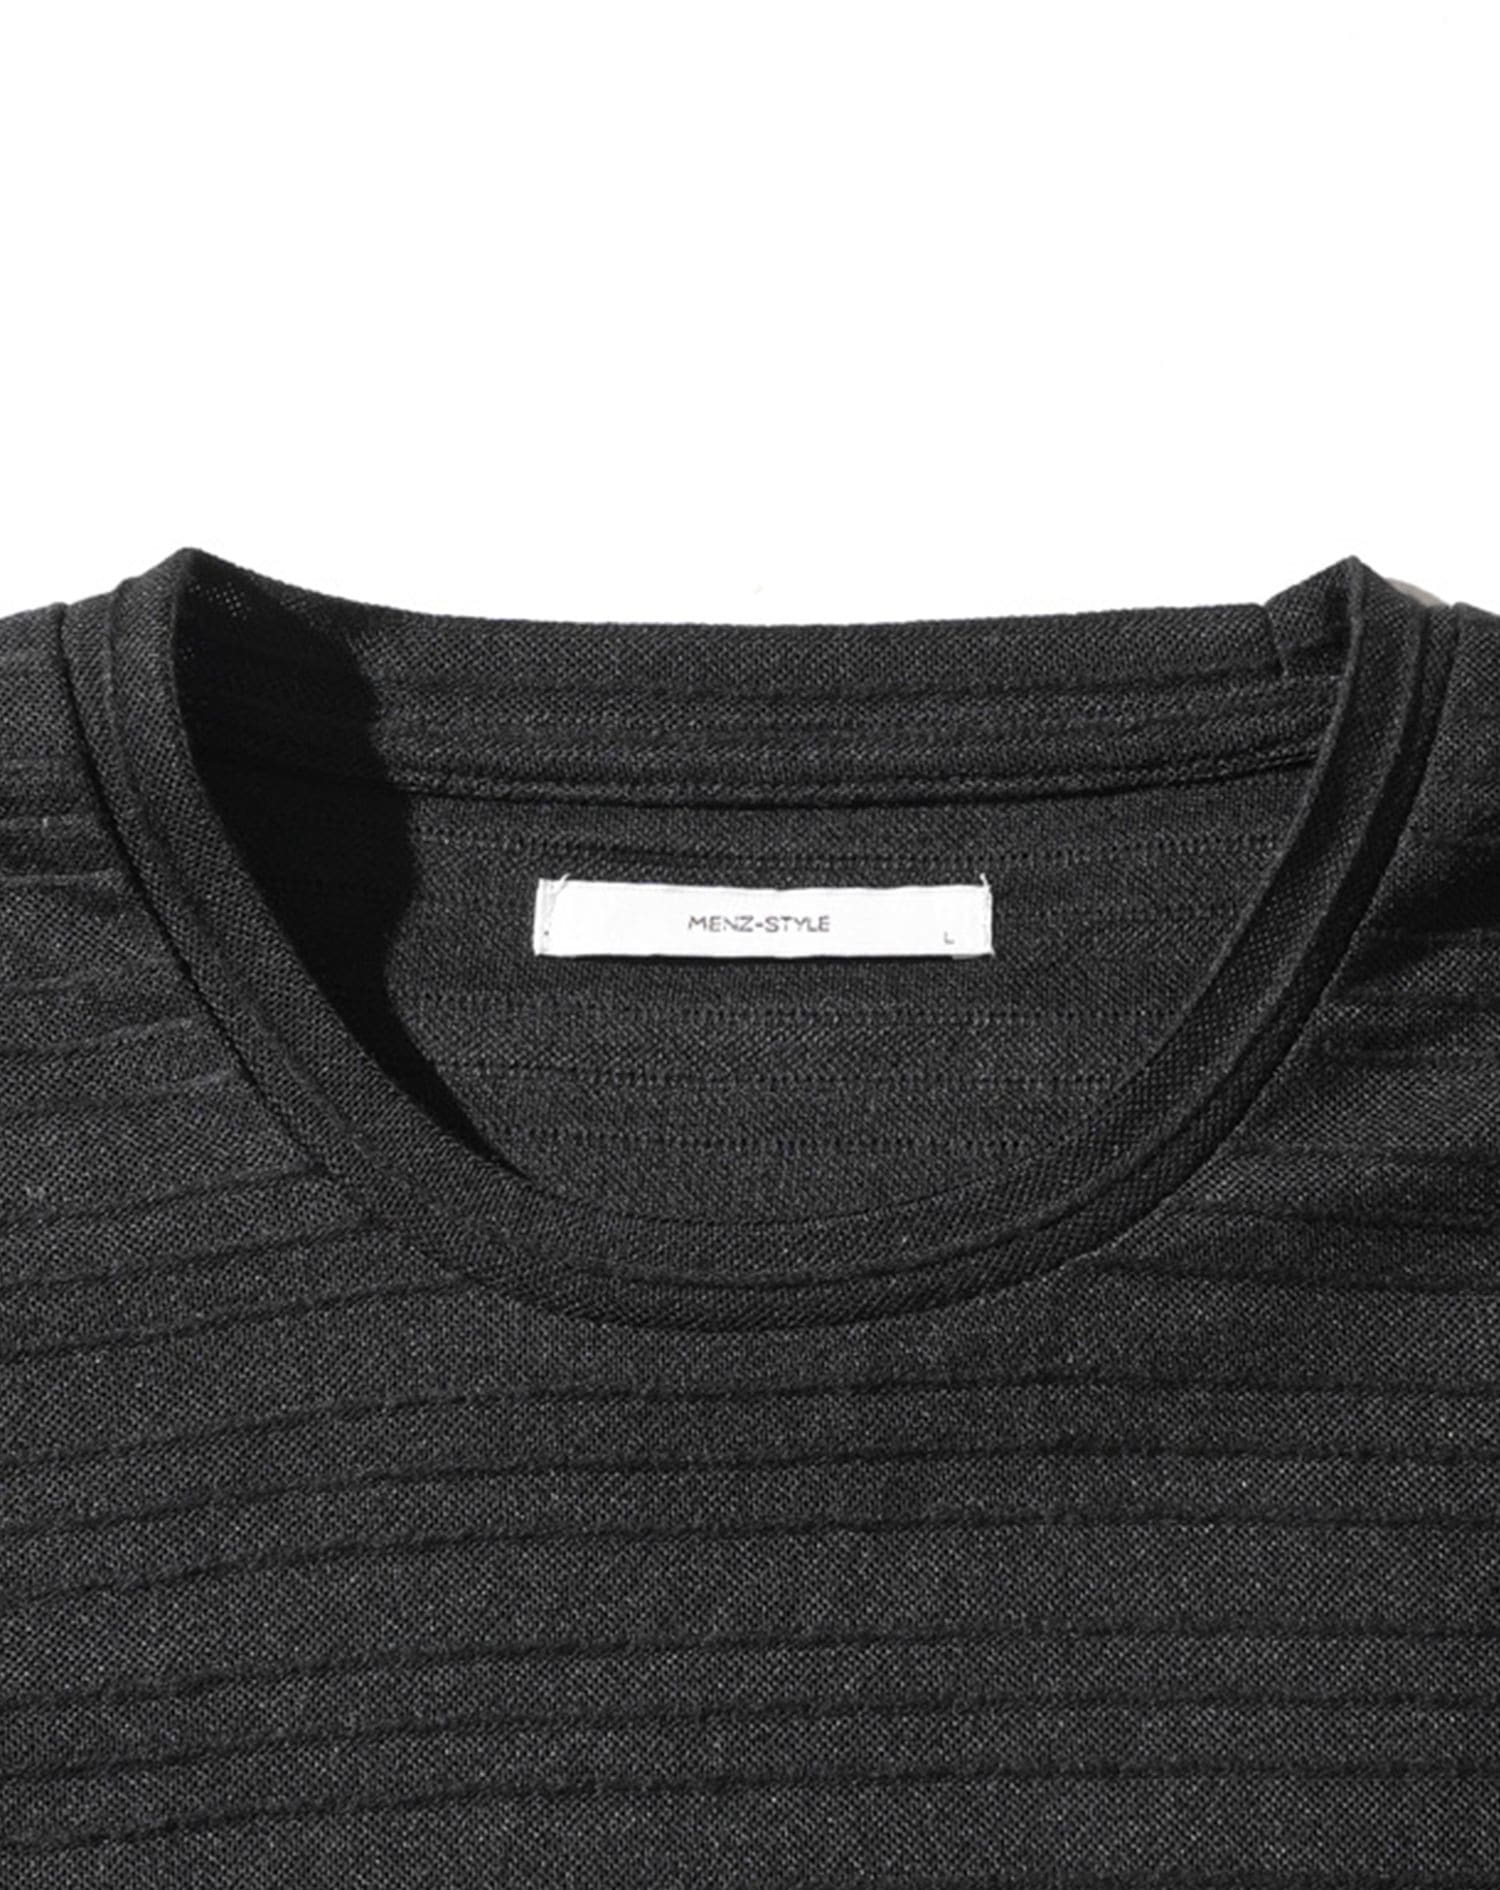 Tシャツ カットソー メンズ 長袖 クルーネック おしゃれ ブランド 人気 おすすめ 無地 コーデ 40代 50代 安い ラウンドネック モノトーン デザイン